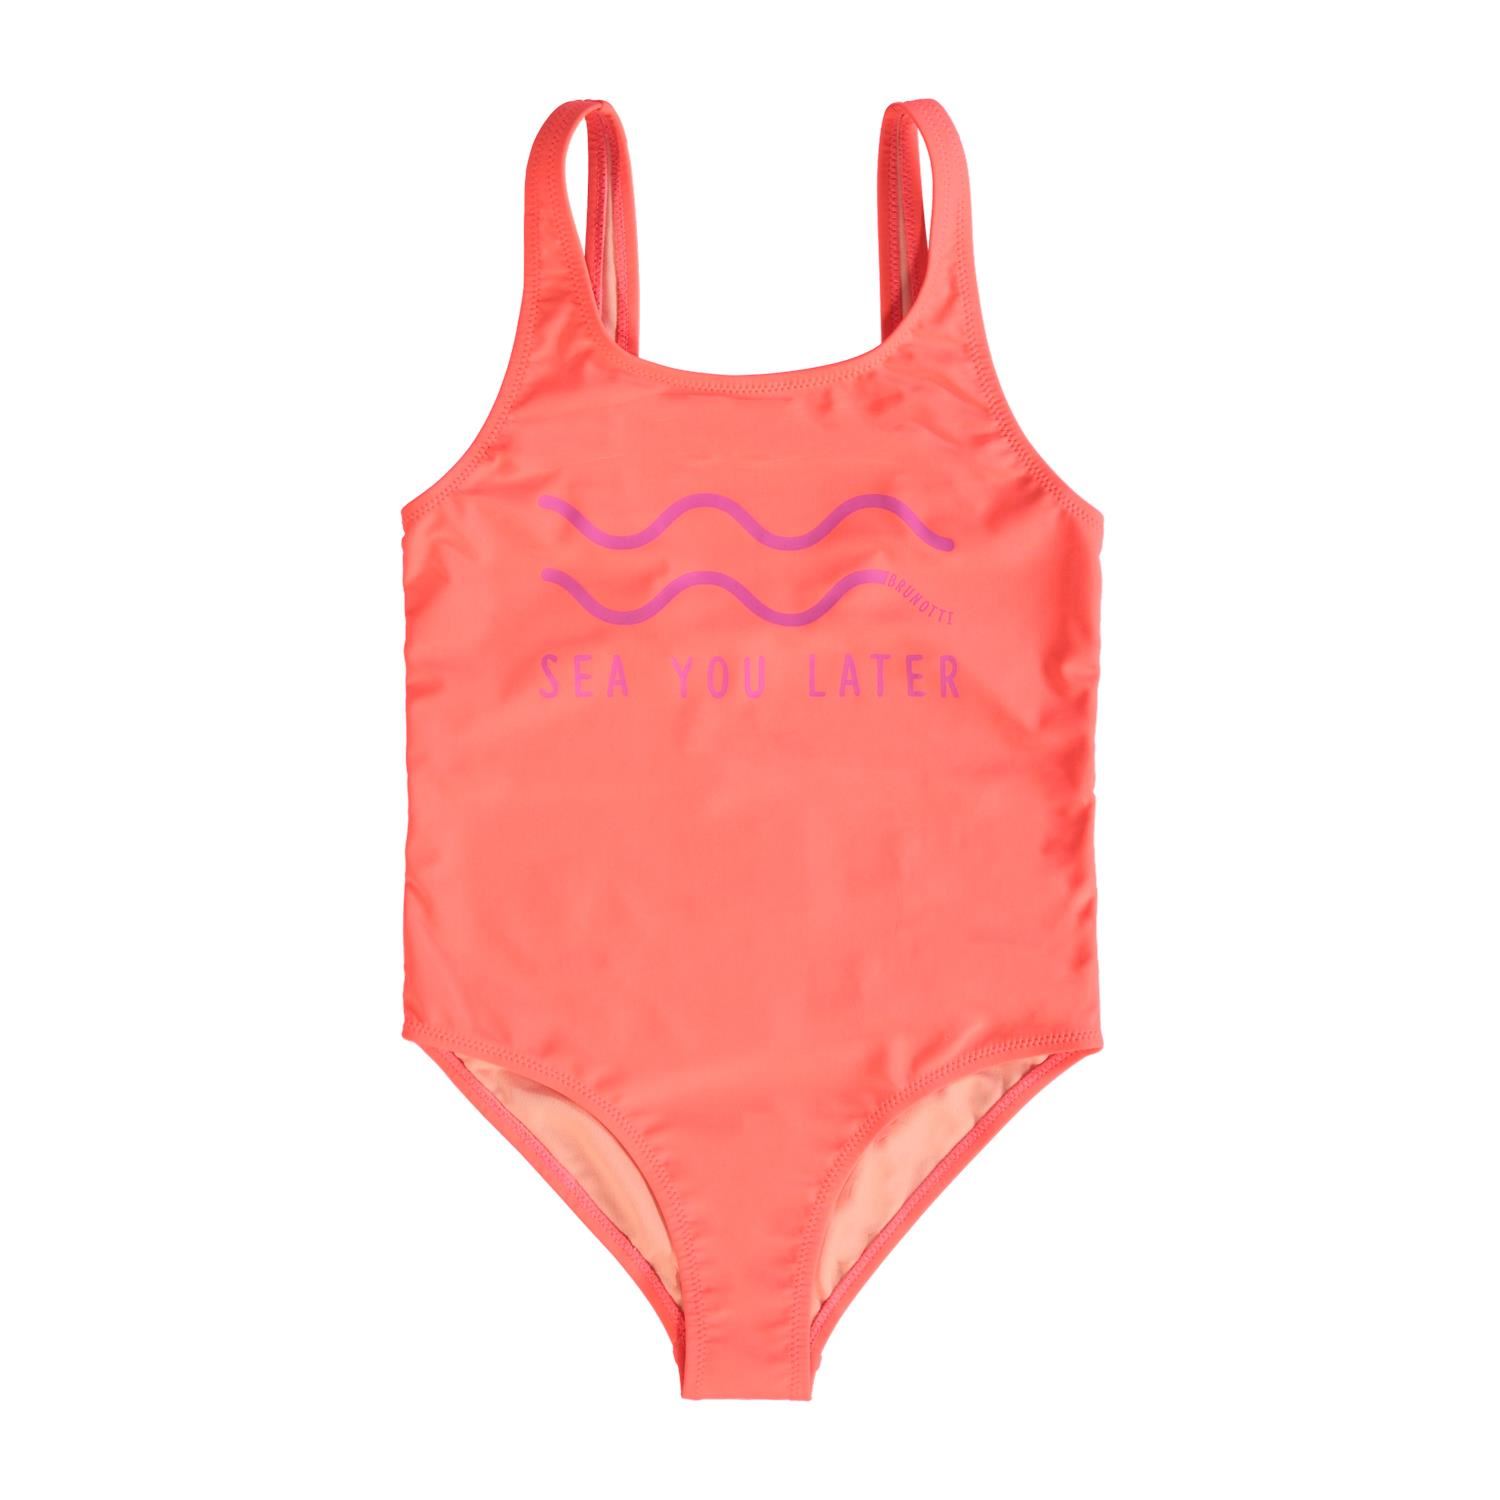 Brunotti Rosalina (pink) - girls swimsuits - Brunotti online shop